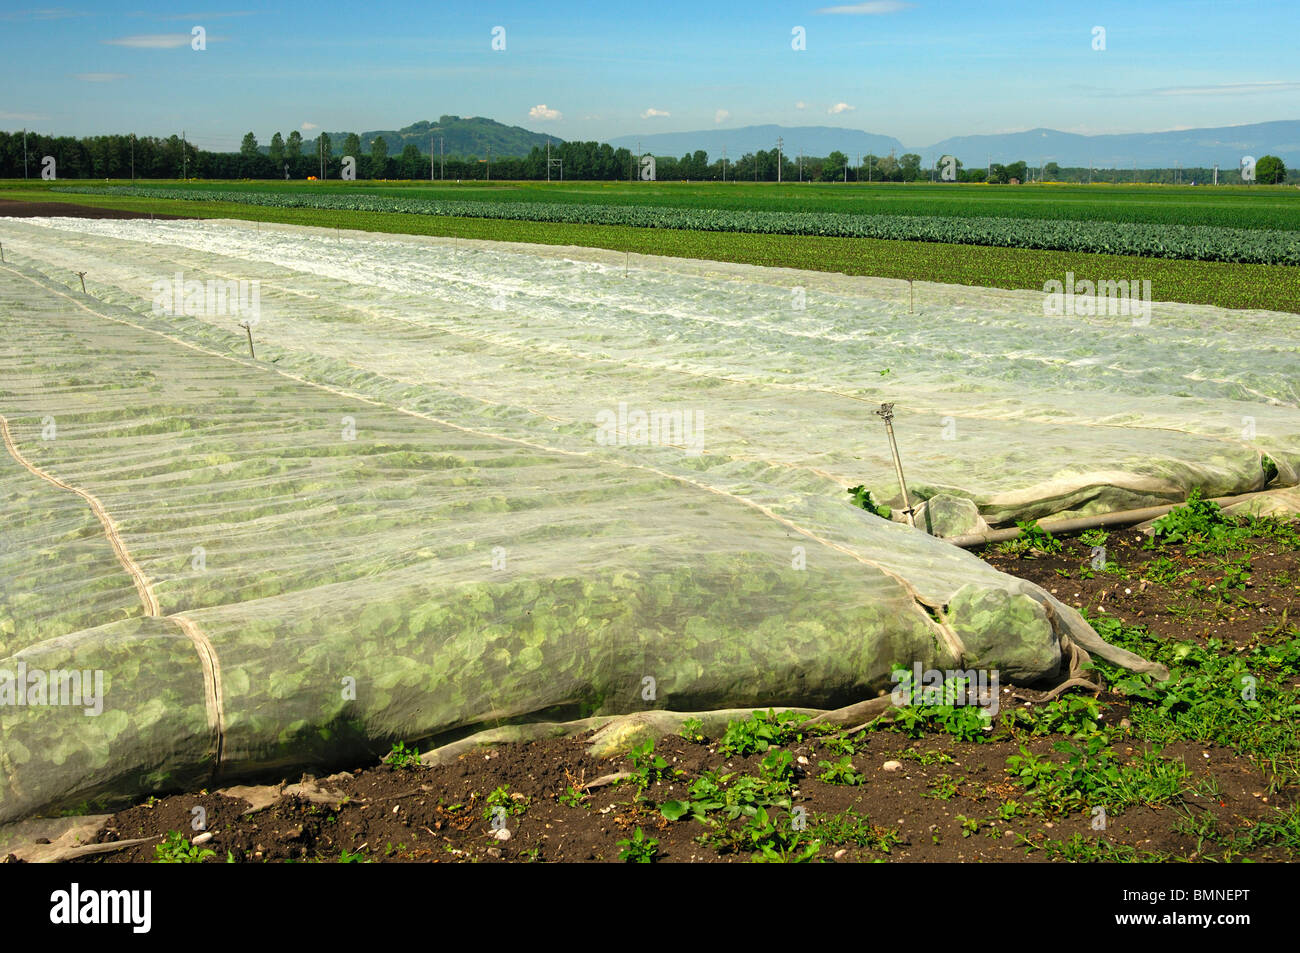 Ecolgical couvre la protection des végétaux contre la mouche du chou, région de culture de légumes Grosses Moos, Suisse Banque D'Images